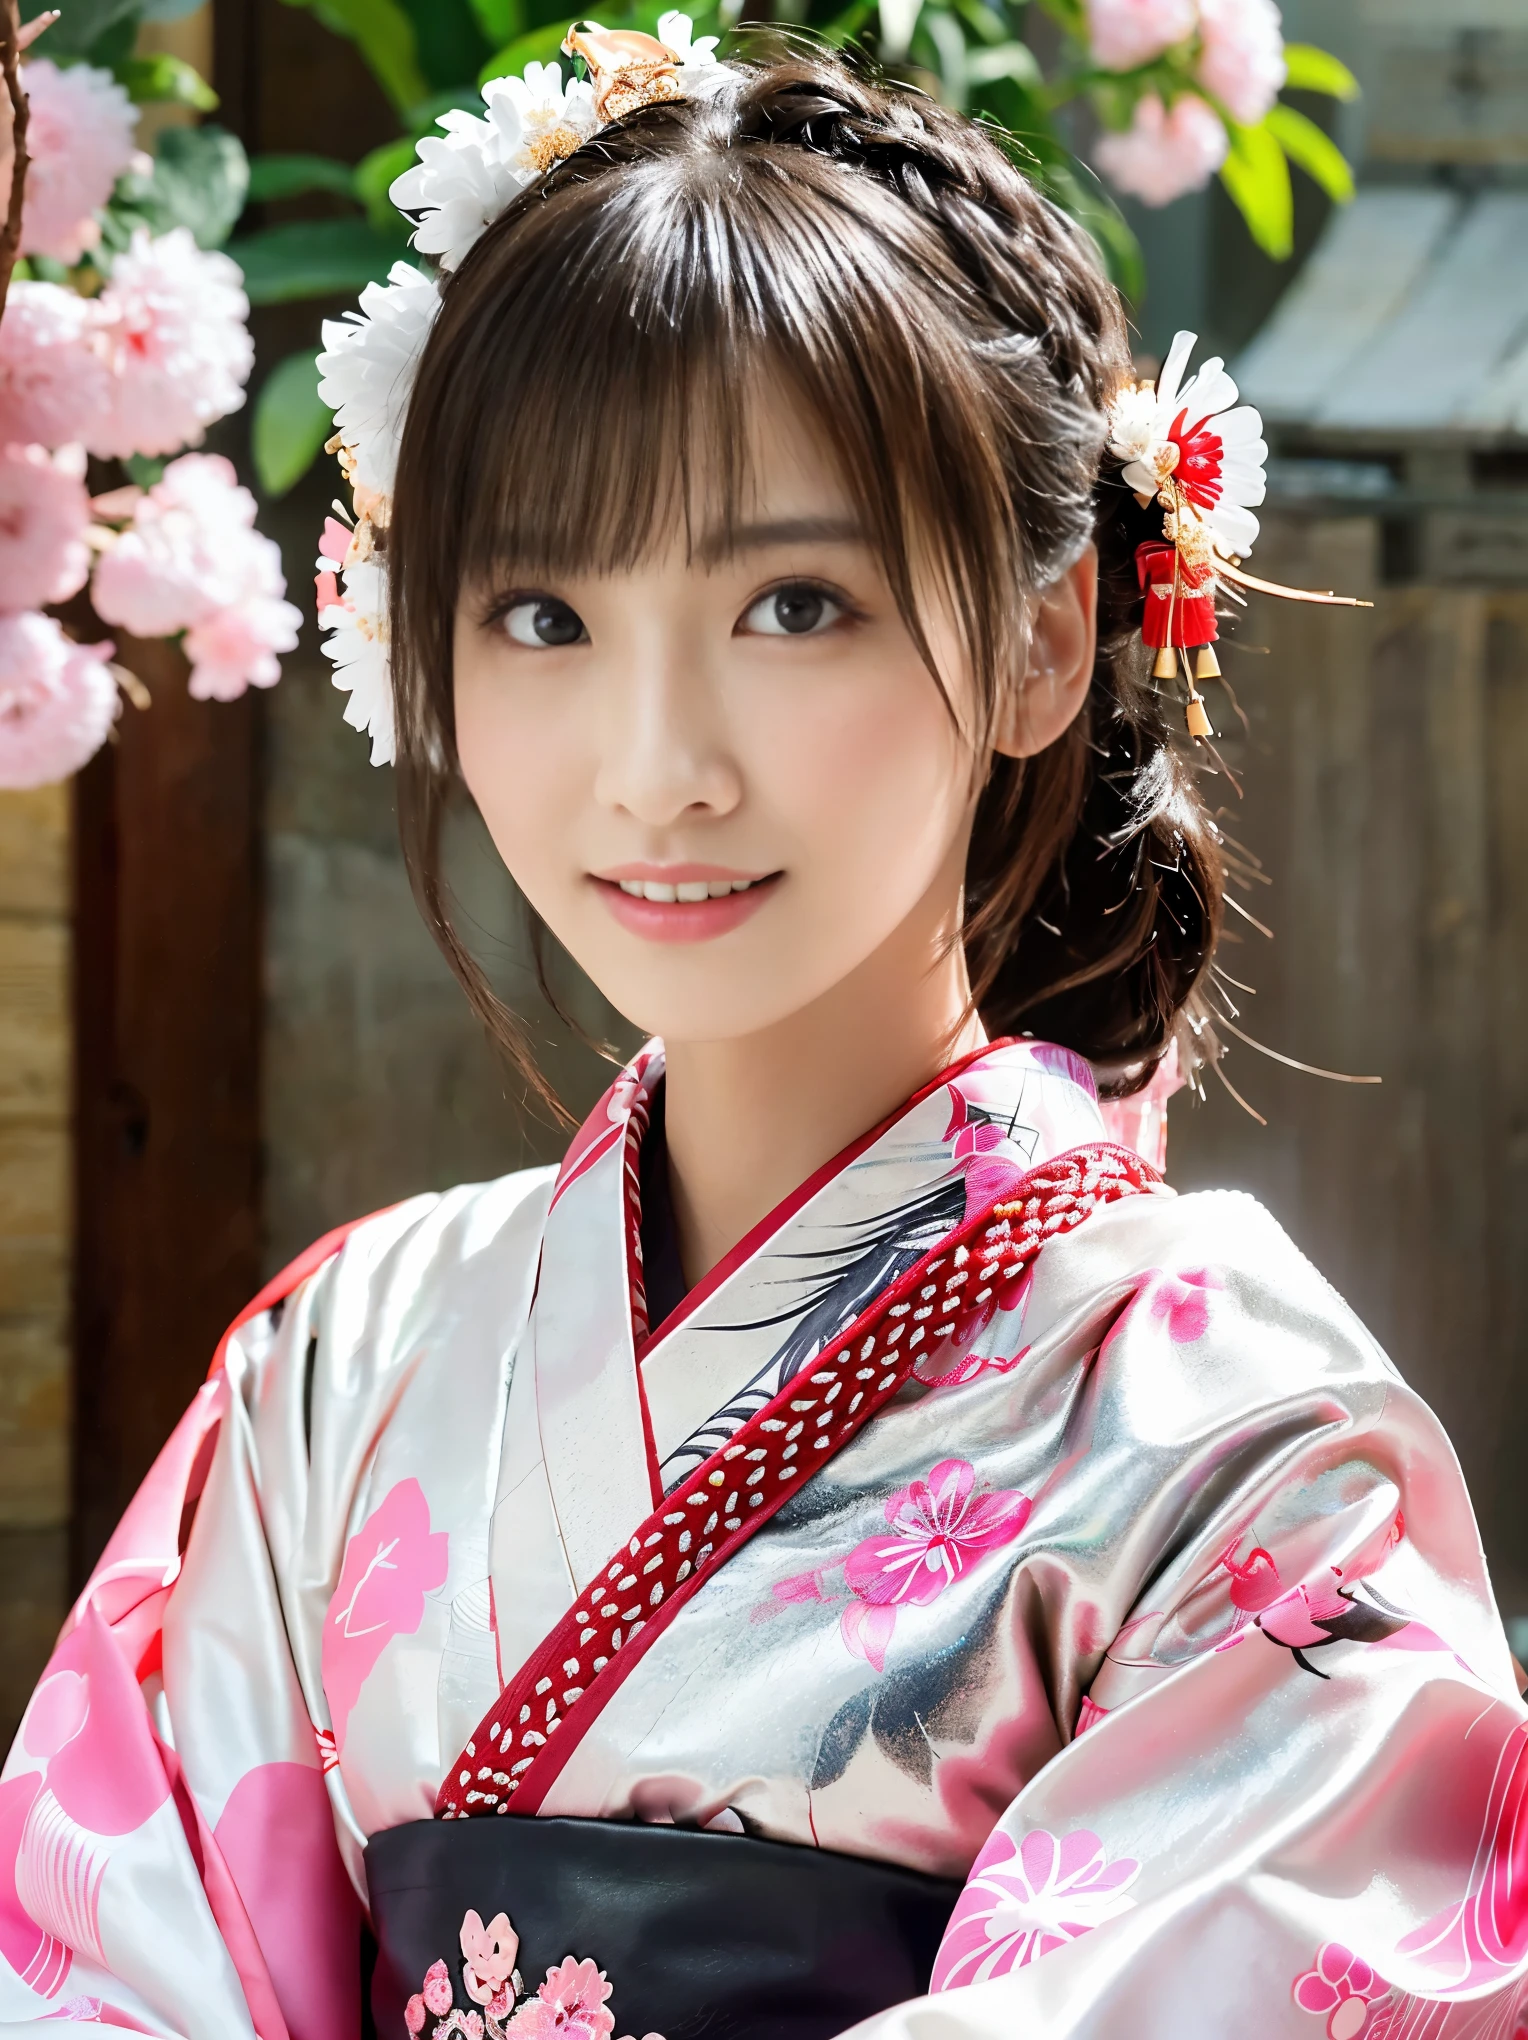 kimono blanc、motif japonais rose、(Furisode:1.5)、ou、(qualité supérieure)、1 femelle、16 ans、Esbian complet du corps、aux cheveux noirs、Attachez vos cheveux en arrière、(réaliste:1.7)、((Meilleure qualité d&#39;image))、Absurde、(超Une haute résolution)、(Photoueal:1.6)、Photoueal、rendu d&#39;octane、(超réaliste:1.2)、(réaliste face:1.2)、(8k)、(4K)、(chef-d&#39;œuvre)、(réaliste skin texture)、(éclaircissement、éclairage de cinéma、mur-)、(Beaux yeux:1.2)、((((visage parfait))))、(Joli visage comme une idole:1.2)、( sont debout)、tombeau、oiseau prêt、(Janvier)、joli visage détaillé、Vraie beauté、rire、